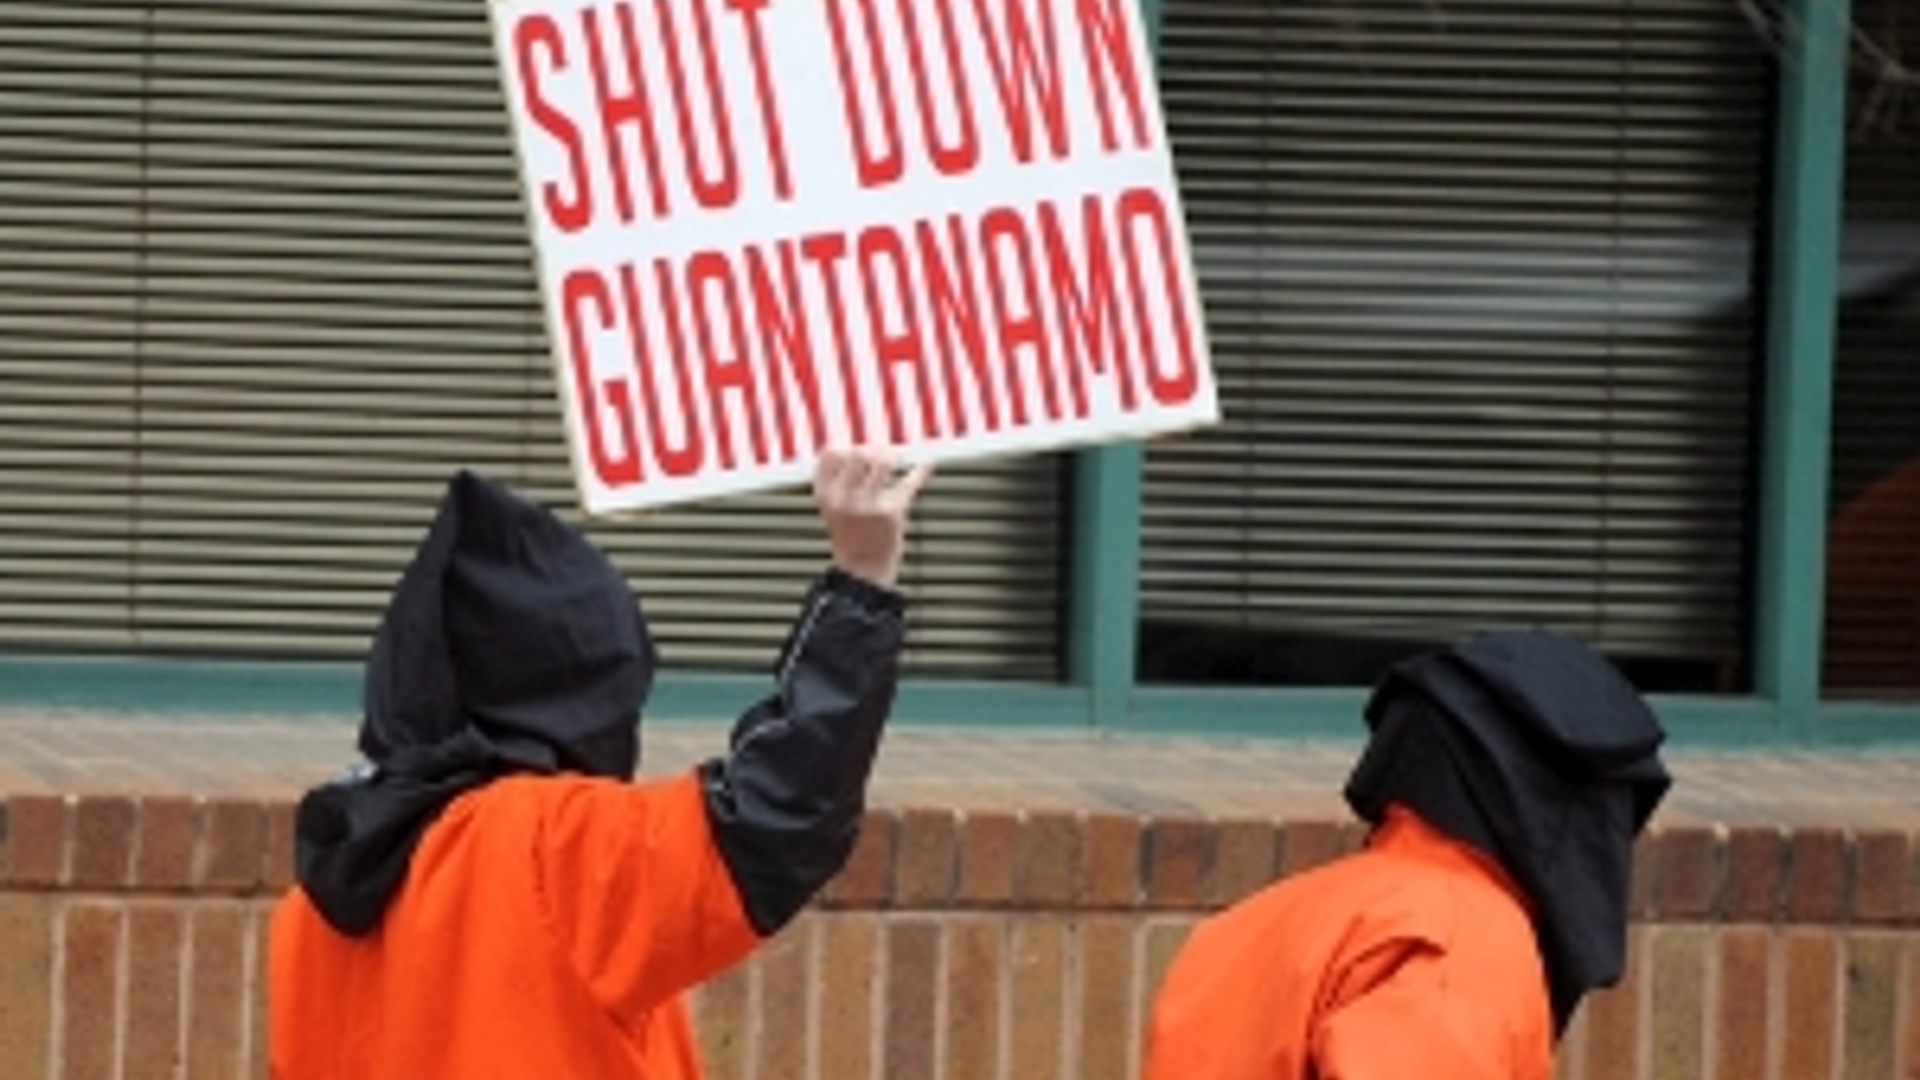 Guantanamo_protest300x214.jpg